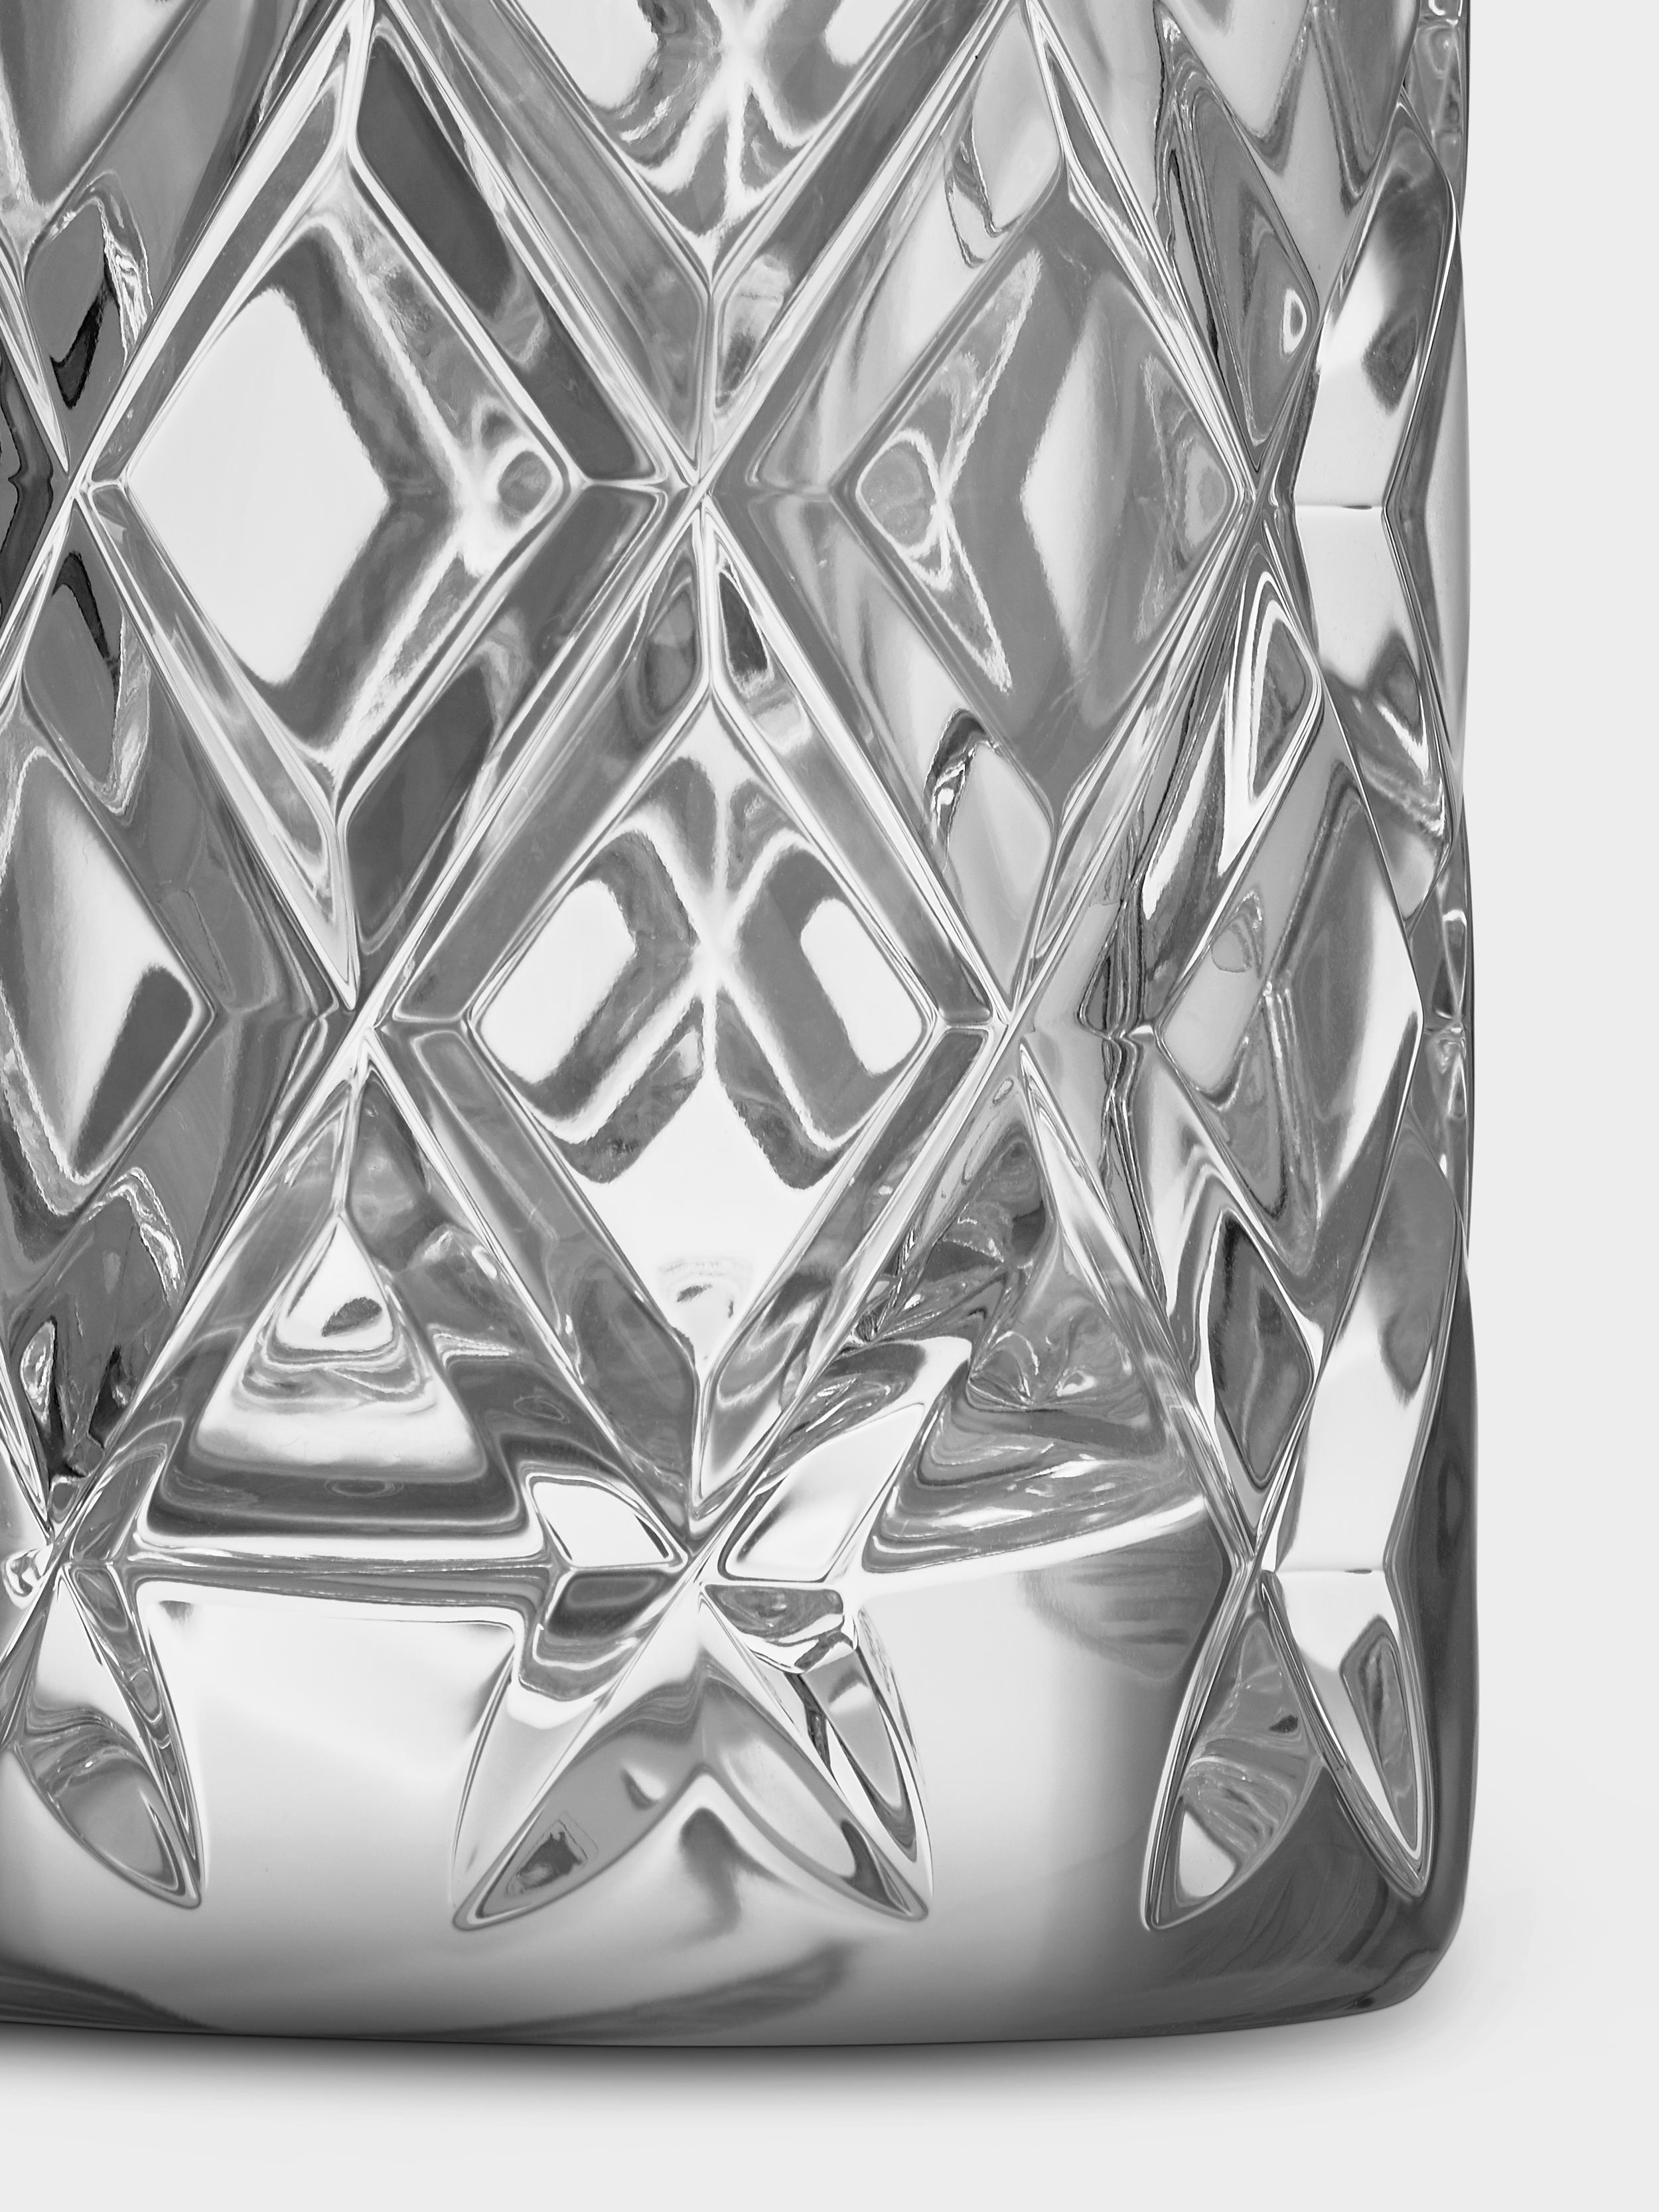 Die Vase aus der Sofiero-Kollektion, 1960 von Gunnar Cyrén entworfen, ist ein zeitloser skandinavischer Klassiker von Orrefors. Er hat ein tief geschliffenes Motiv, das das Licht in dem dicken Kristall schön bricht. Die Vase Sofiero ist sowohl